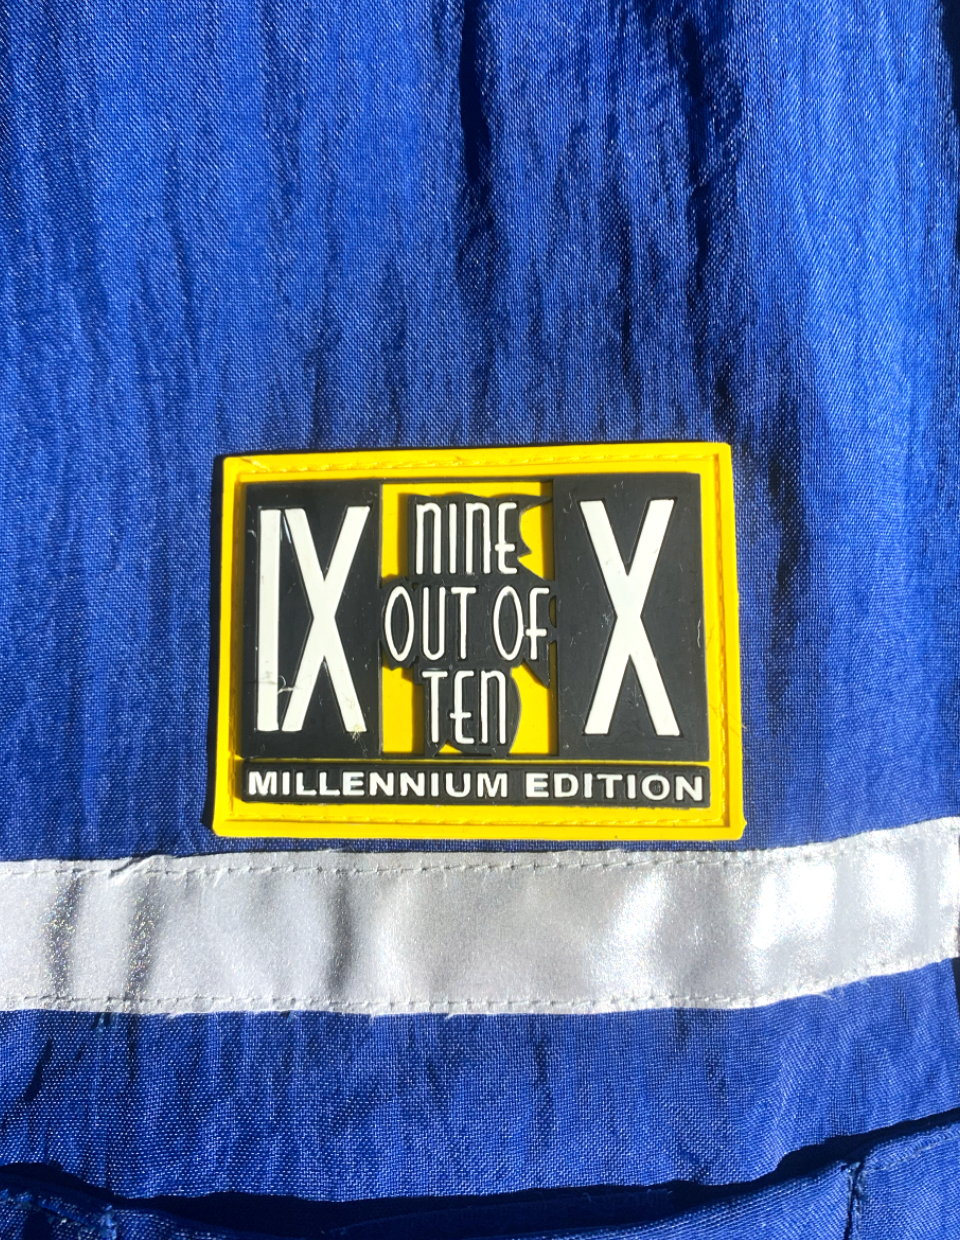 Vintage Out of Order Vest